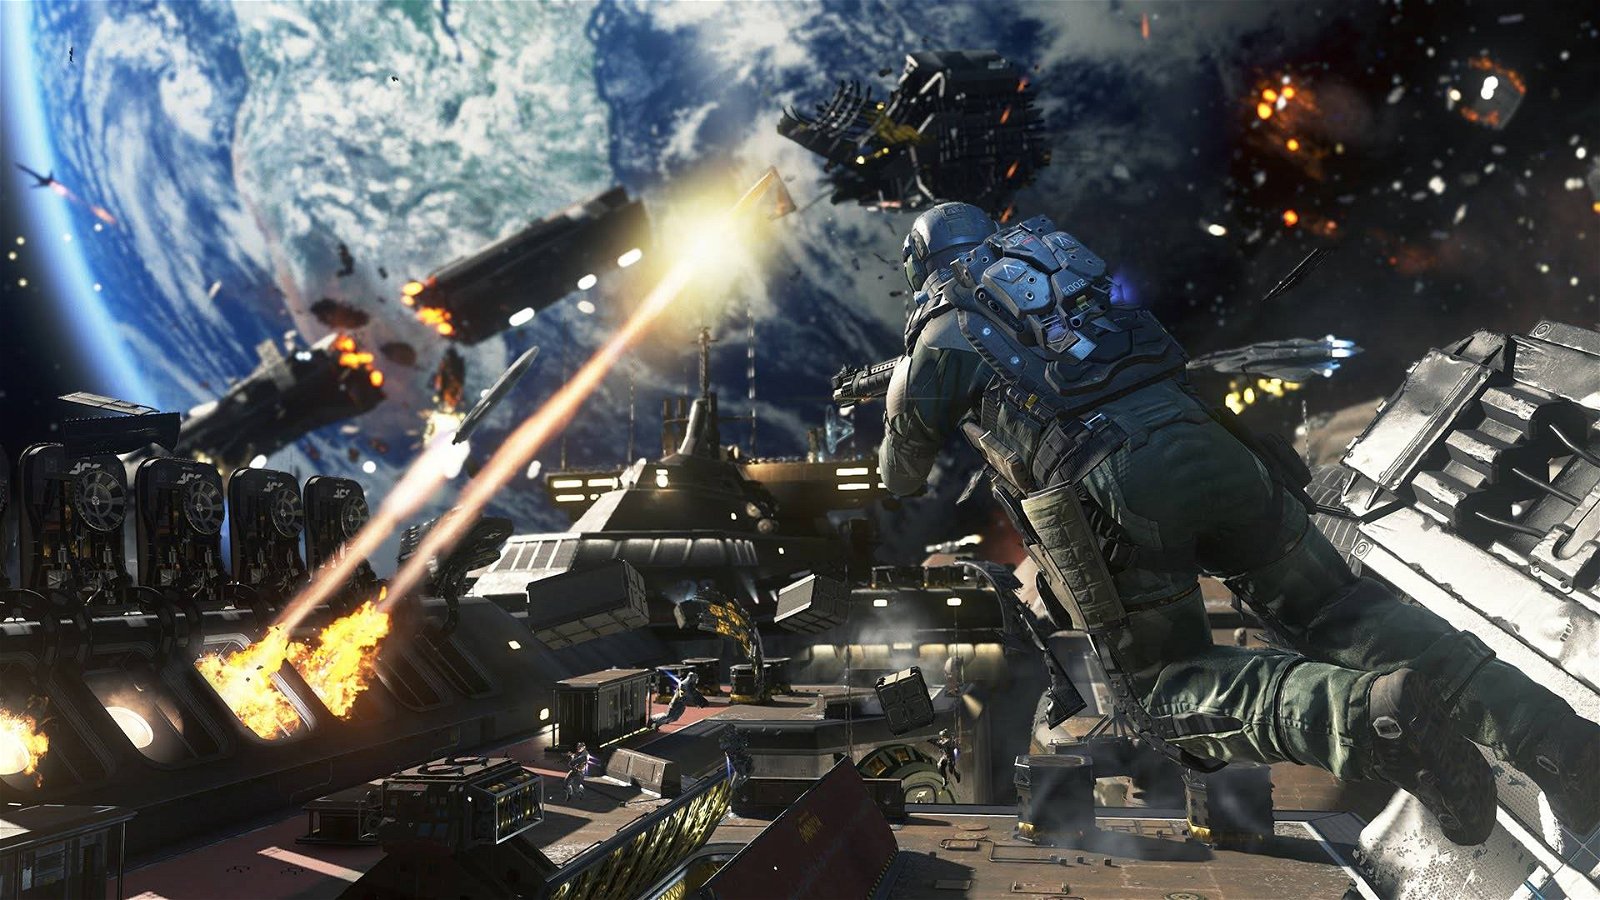 Immagine di Infinity Ward, sviluppatore di COD, minacciata da un attacco bomba